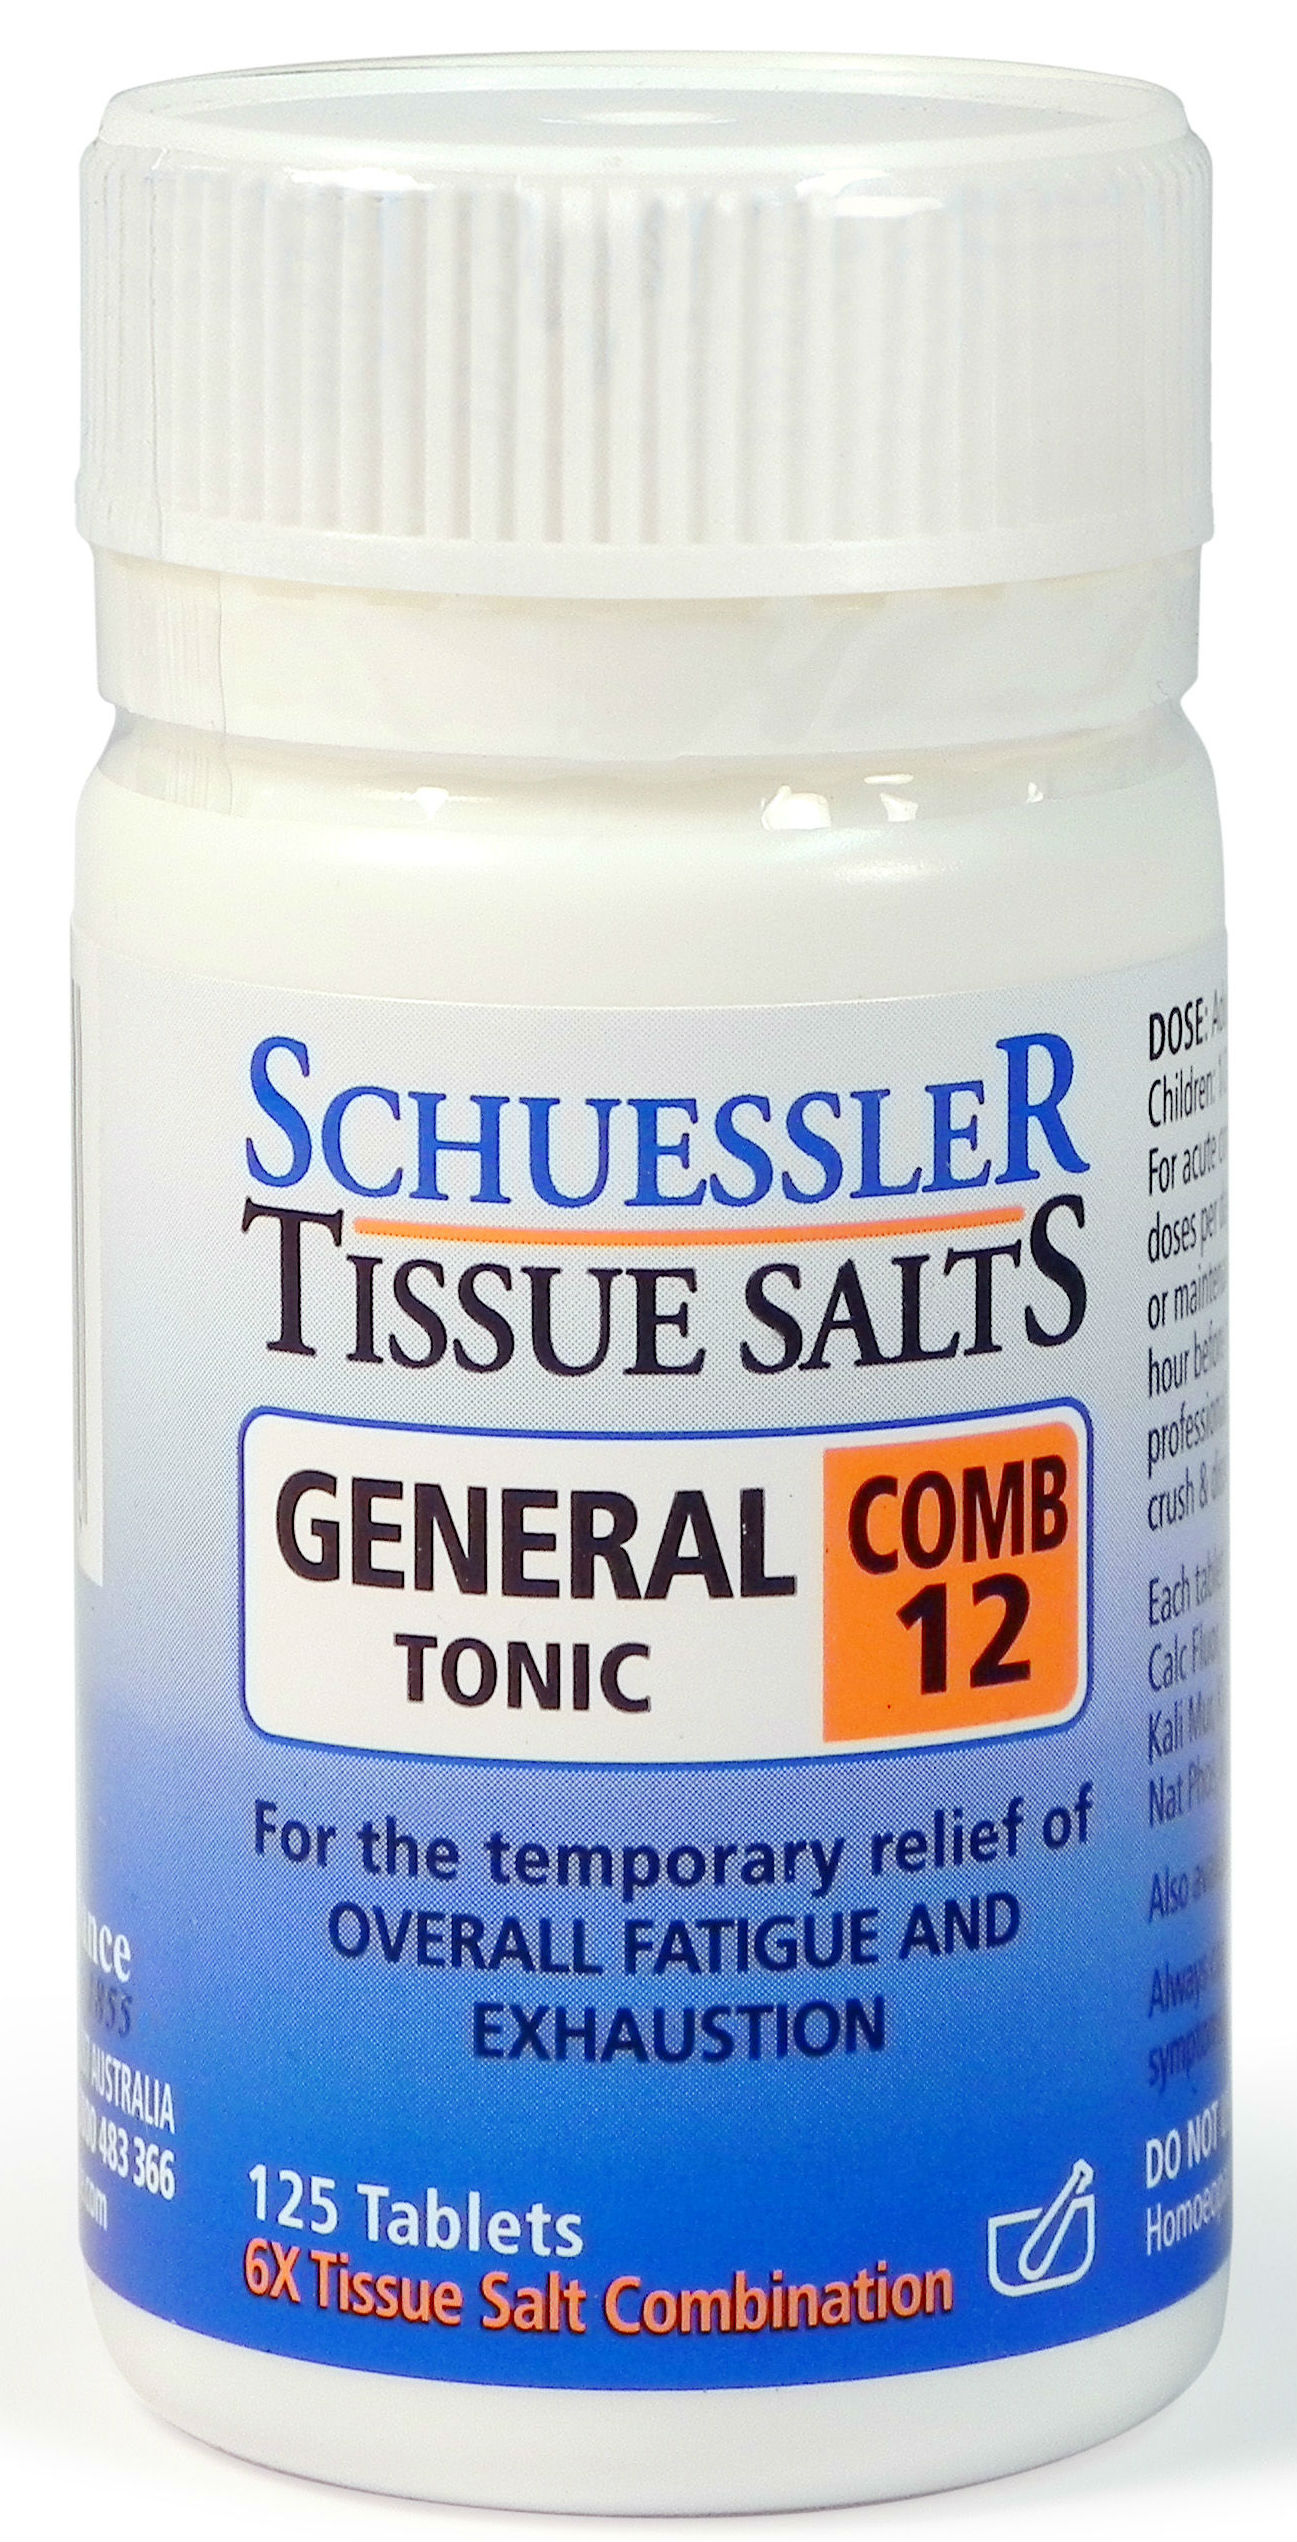 Schuessler Tissue Salts Comb 12 X 125